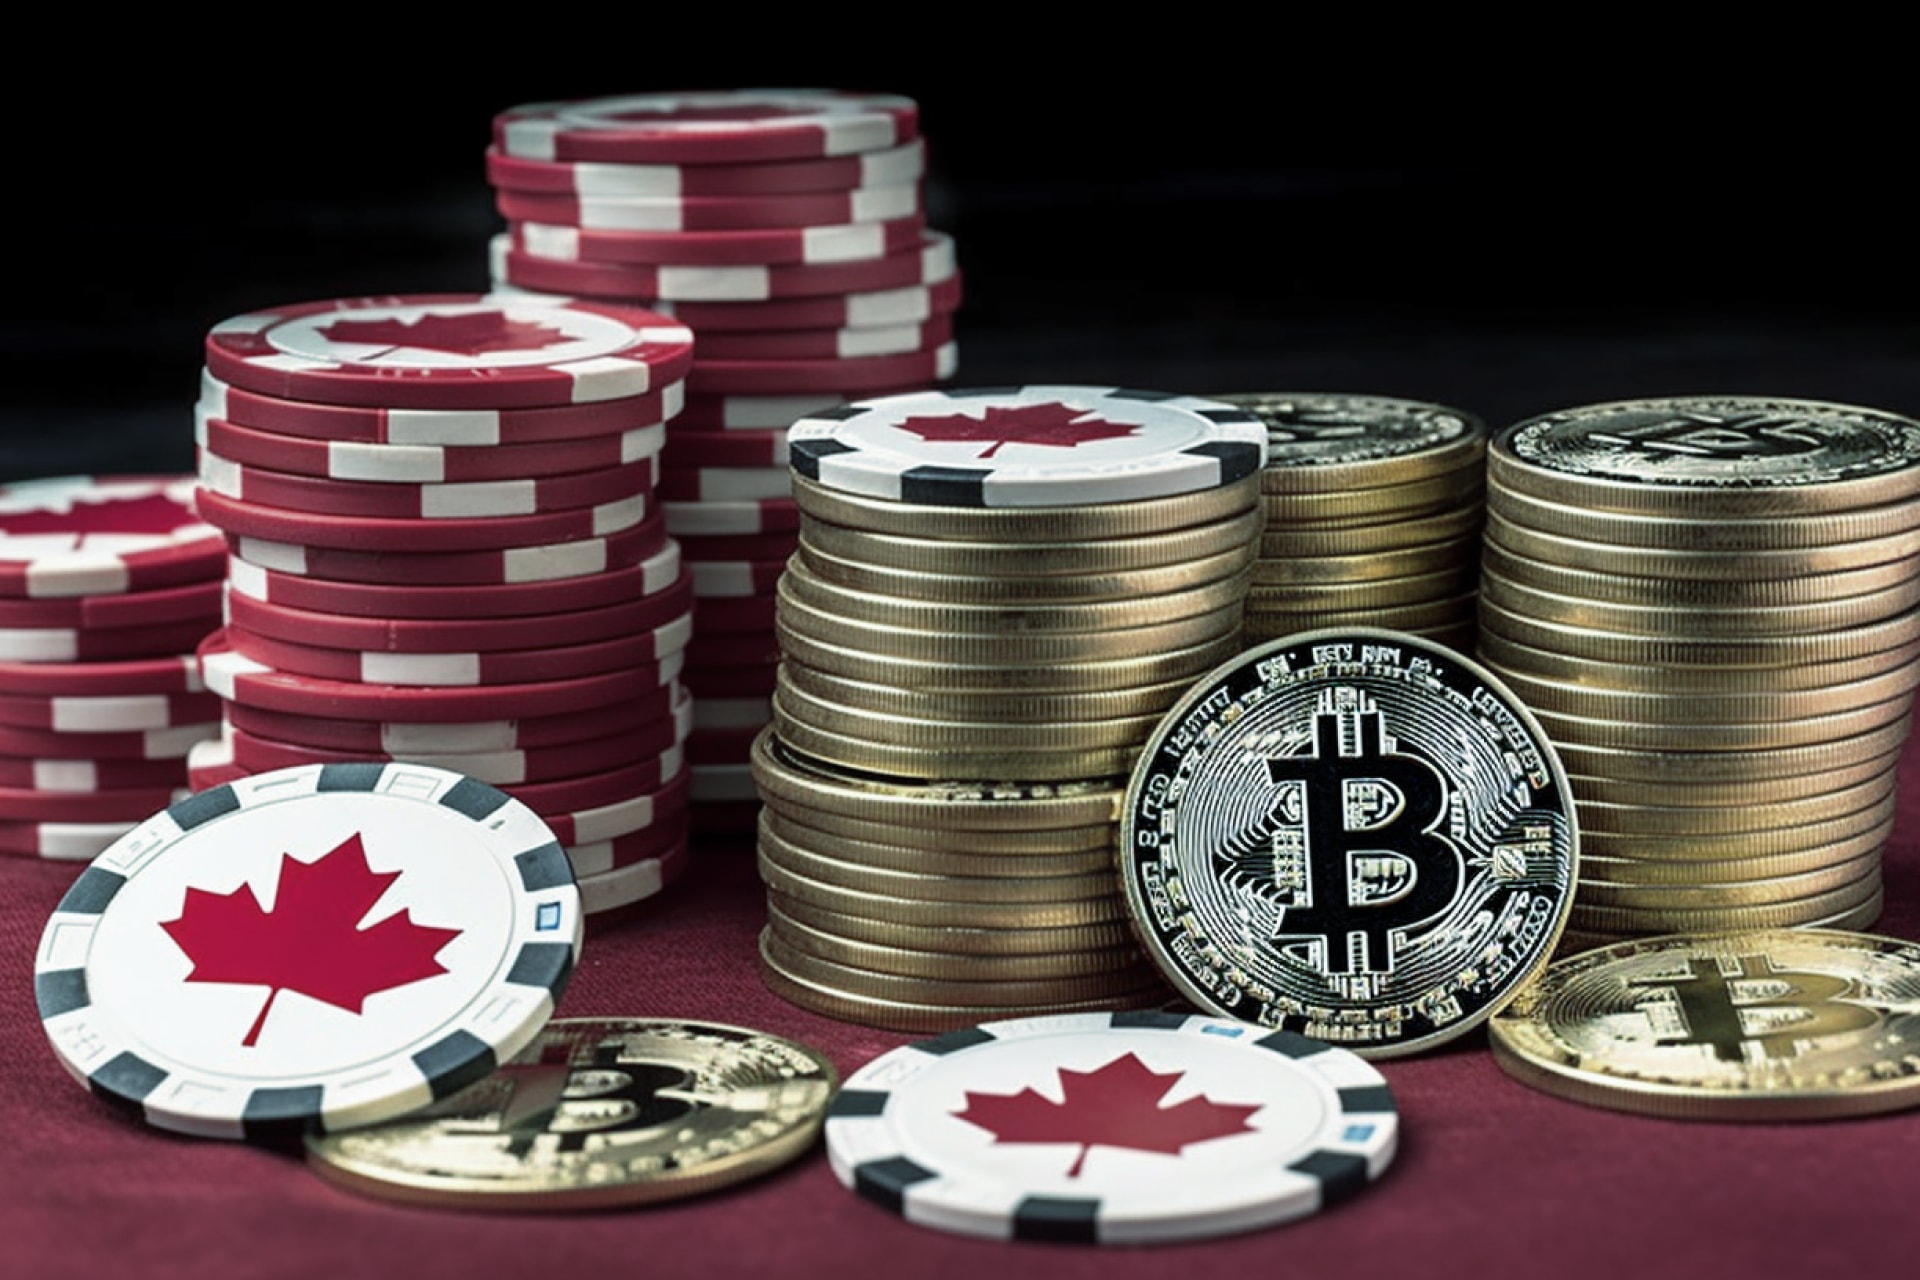 The top Canadian Bitcoin Casinos